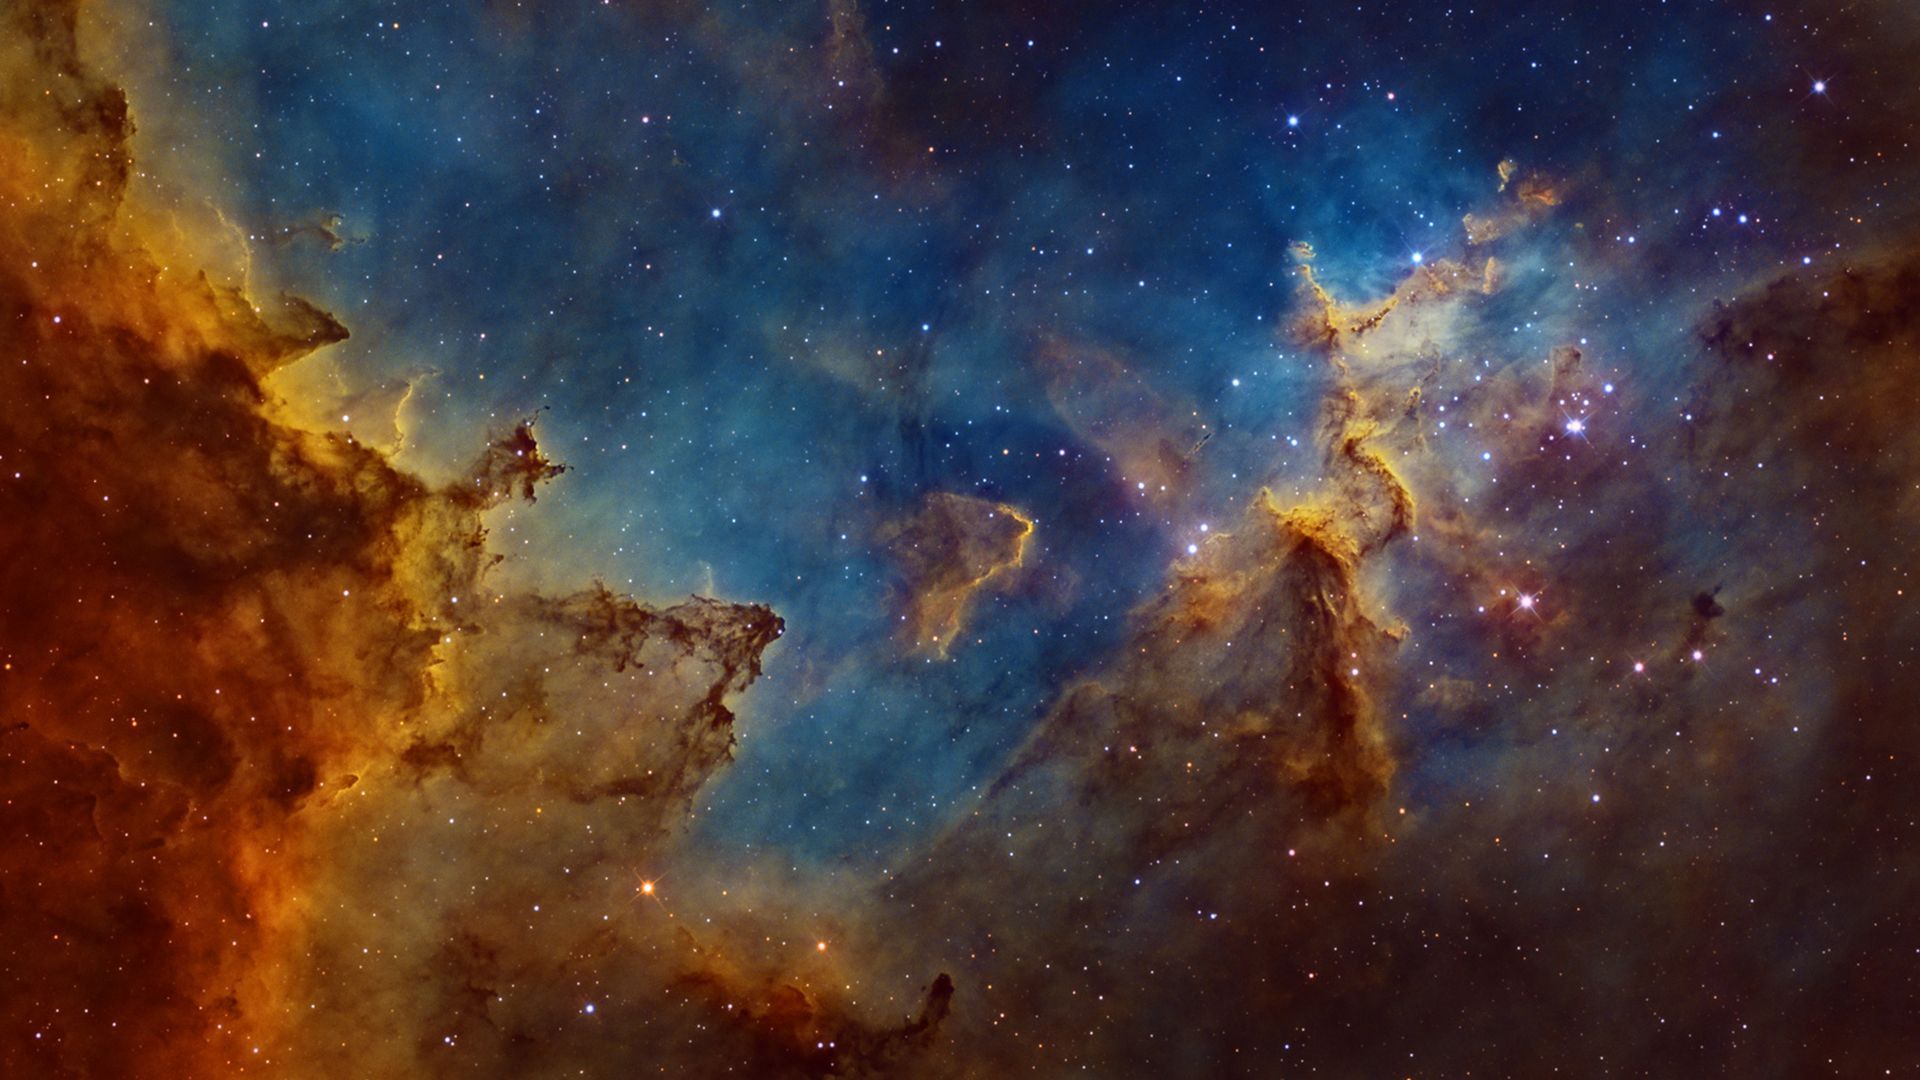 Nebula HD Wallpaper | 1920x1080 | ID:48897